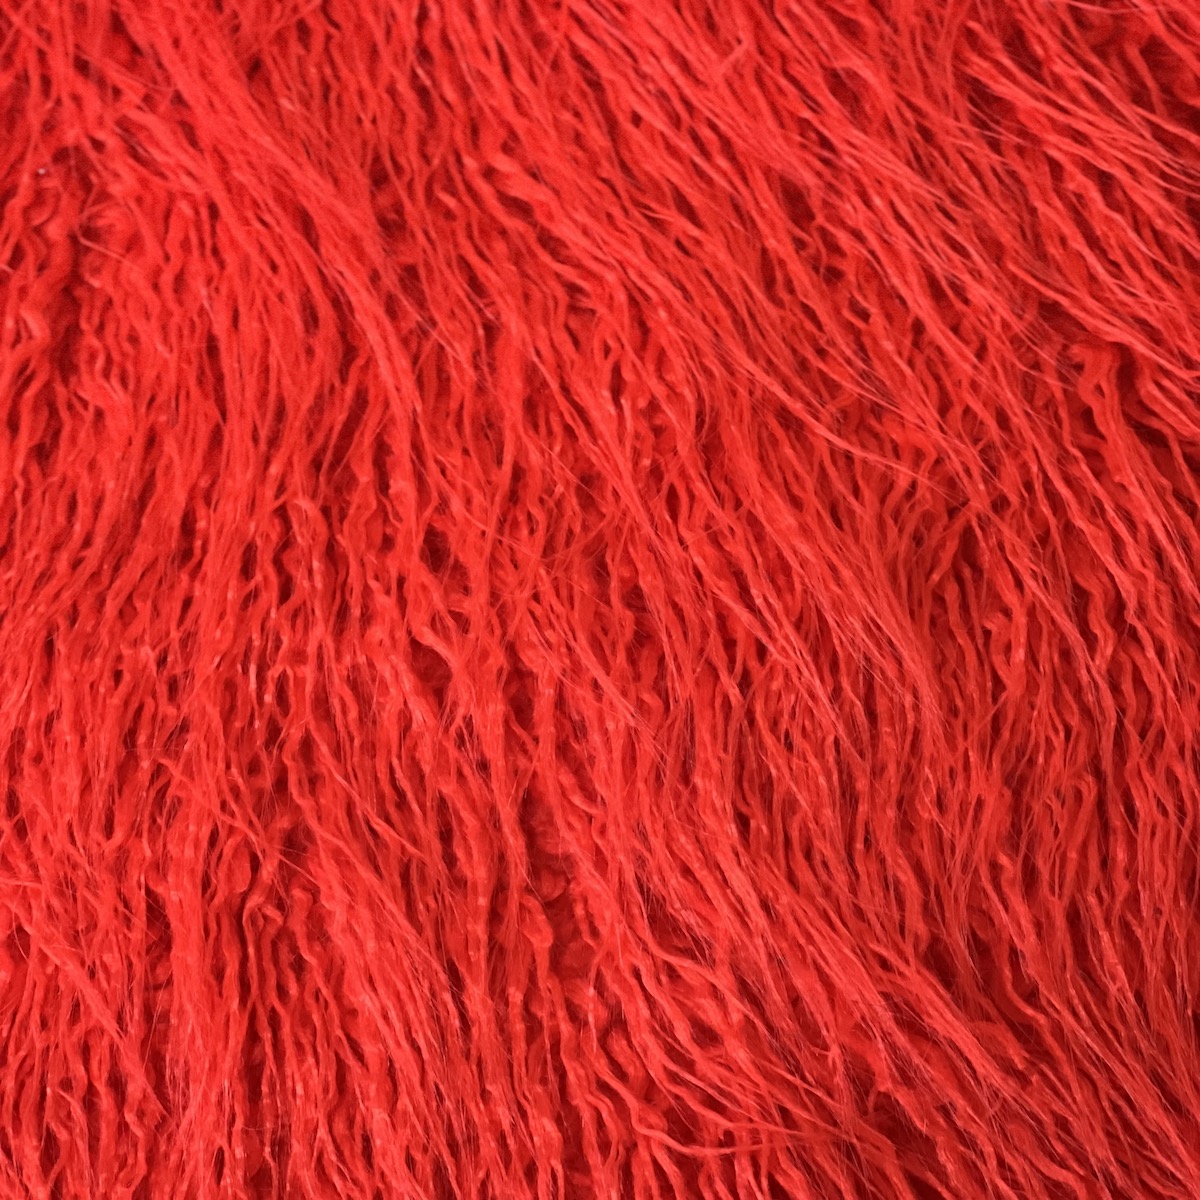 Red Mongolian Long Pile Faux Fur Fabric - Fashion Fabrics LLC